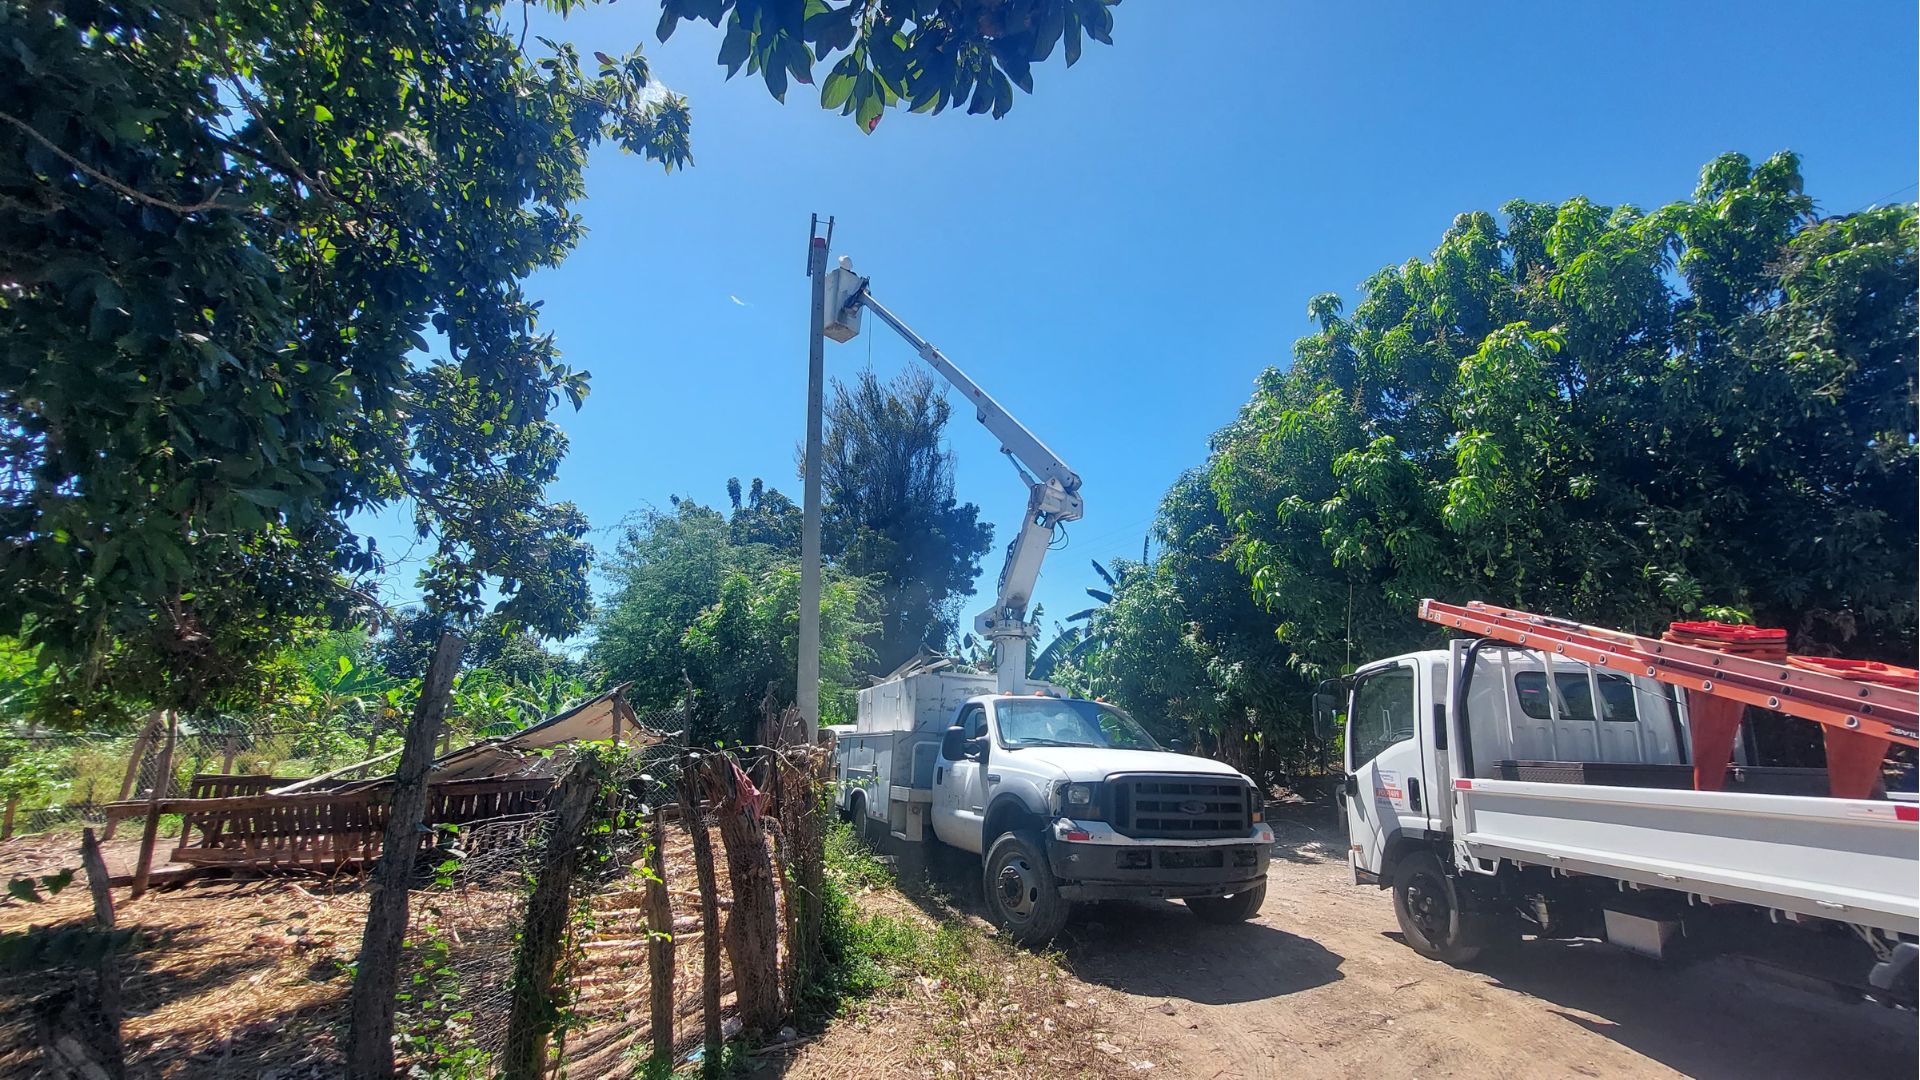 Edesur electrifica bombas para irrigar 5,000 tareas de tierras agrícolas en Estebanía, Azua